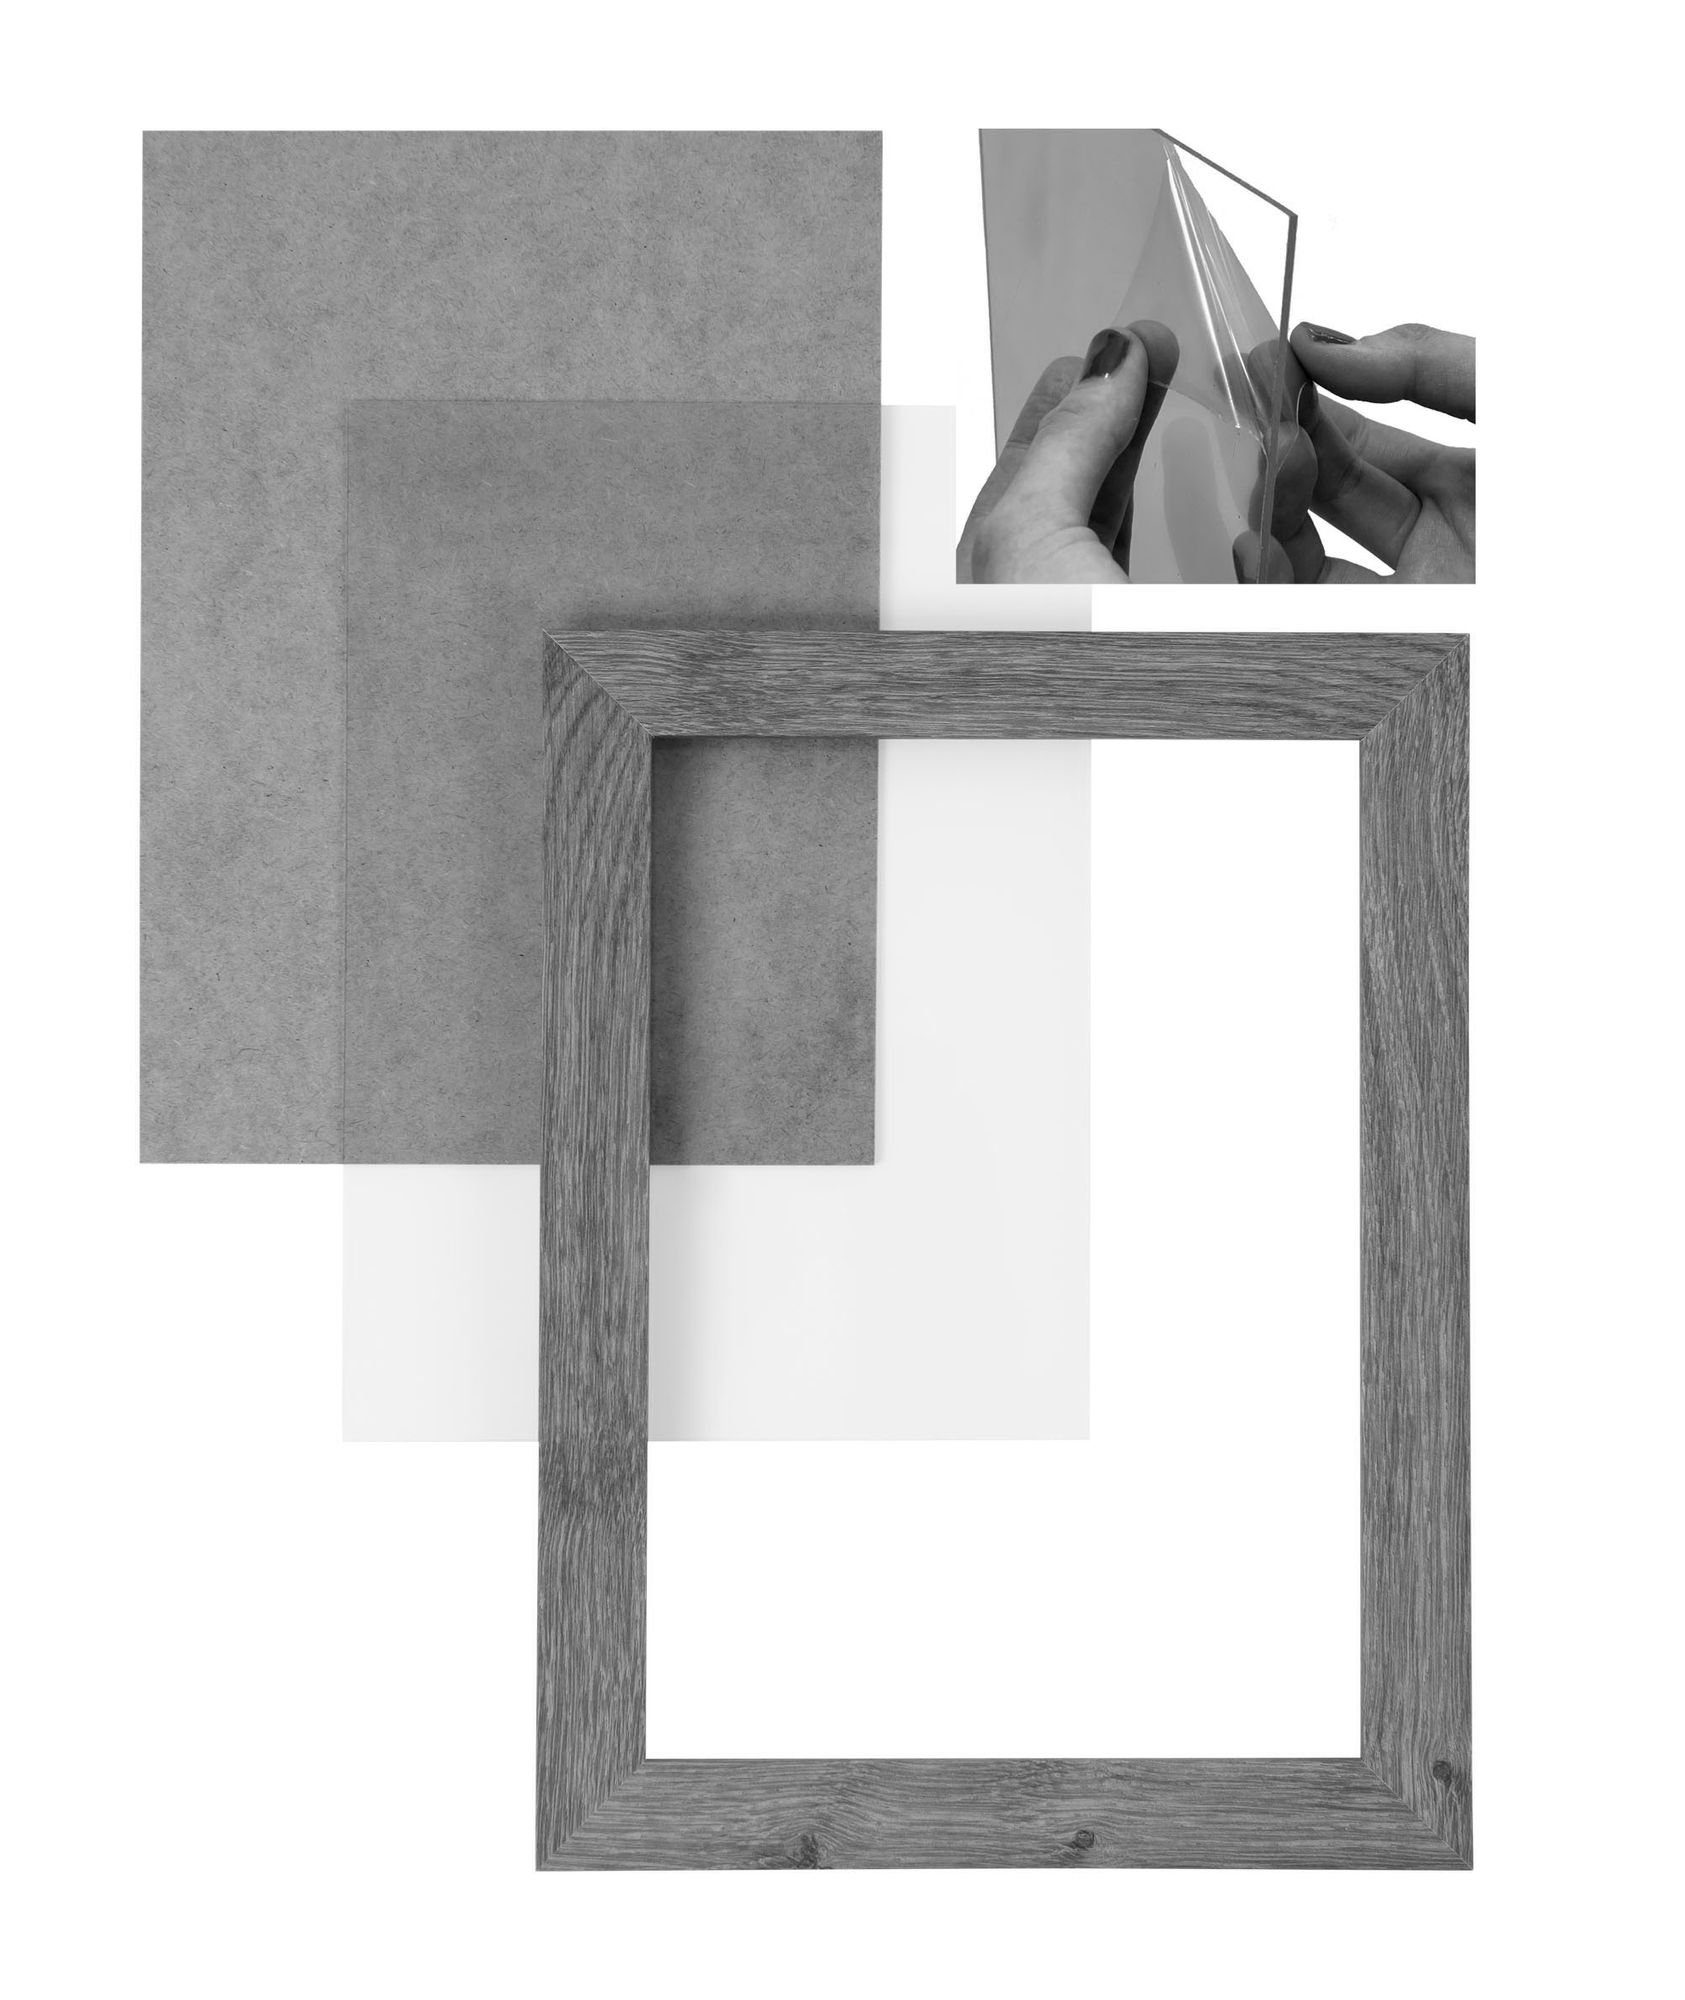 Moderner eiche inkl. eckiger FSC® CLAMARO Rahmen Acrylglas, MDF sonama Rückwand nach Bilderrahmen 'Collage' Holz handgefertigt Bilderrahmen Aufhänger Clamaro Maß und 30x44 in